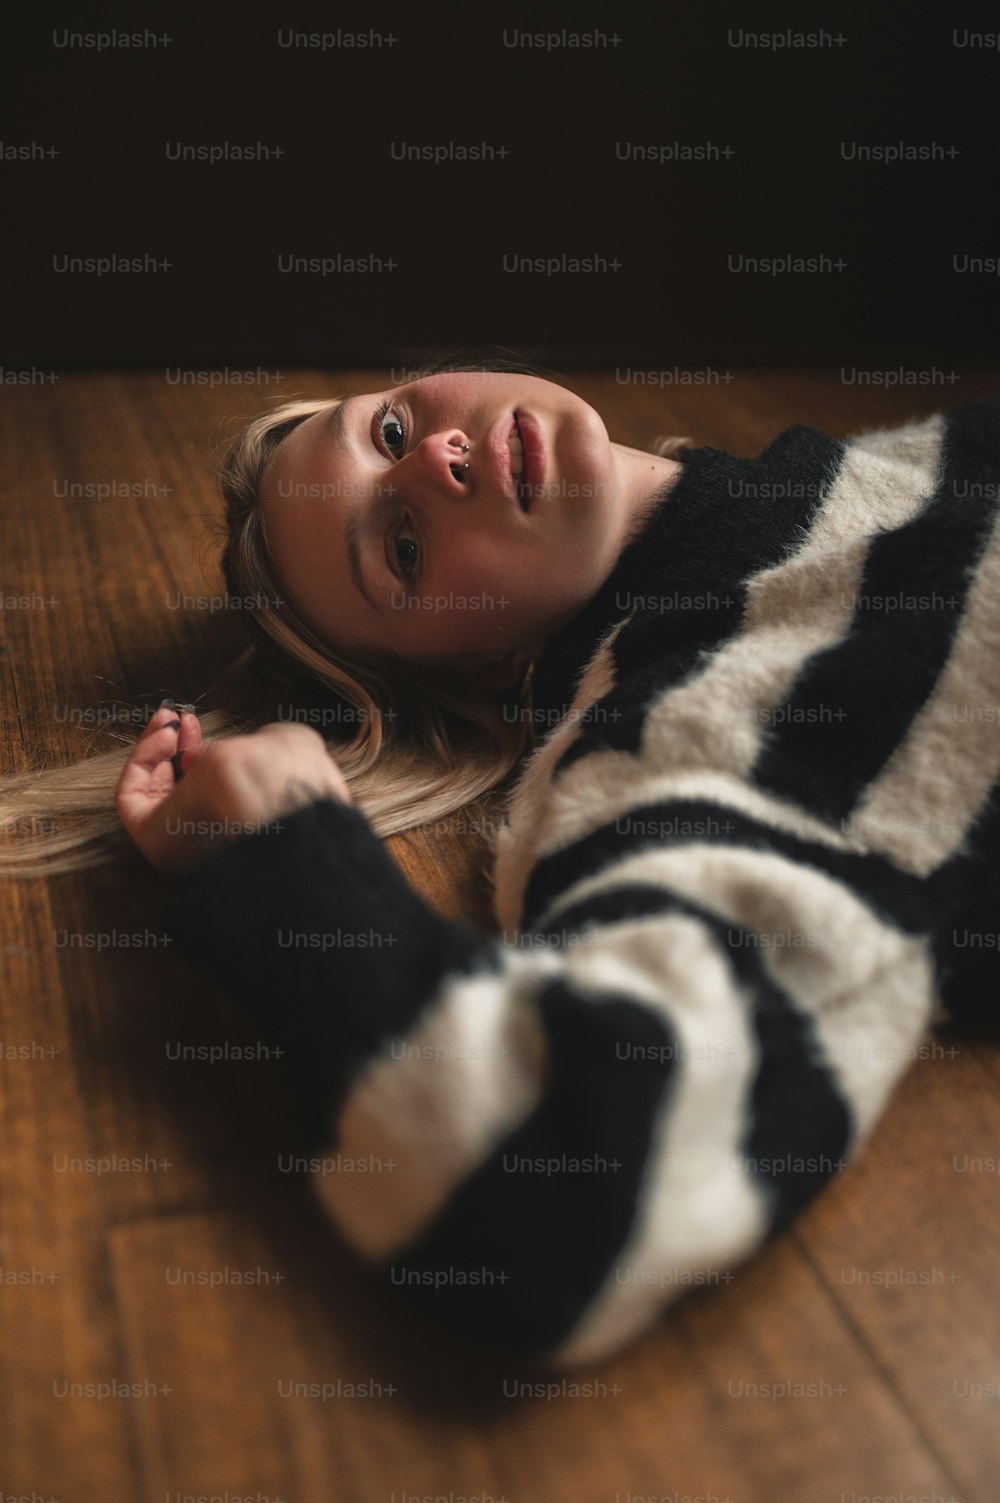 흑백 스웨터를 입고 바닥에 누워 있는 여자